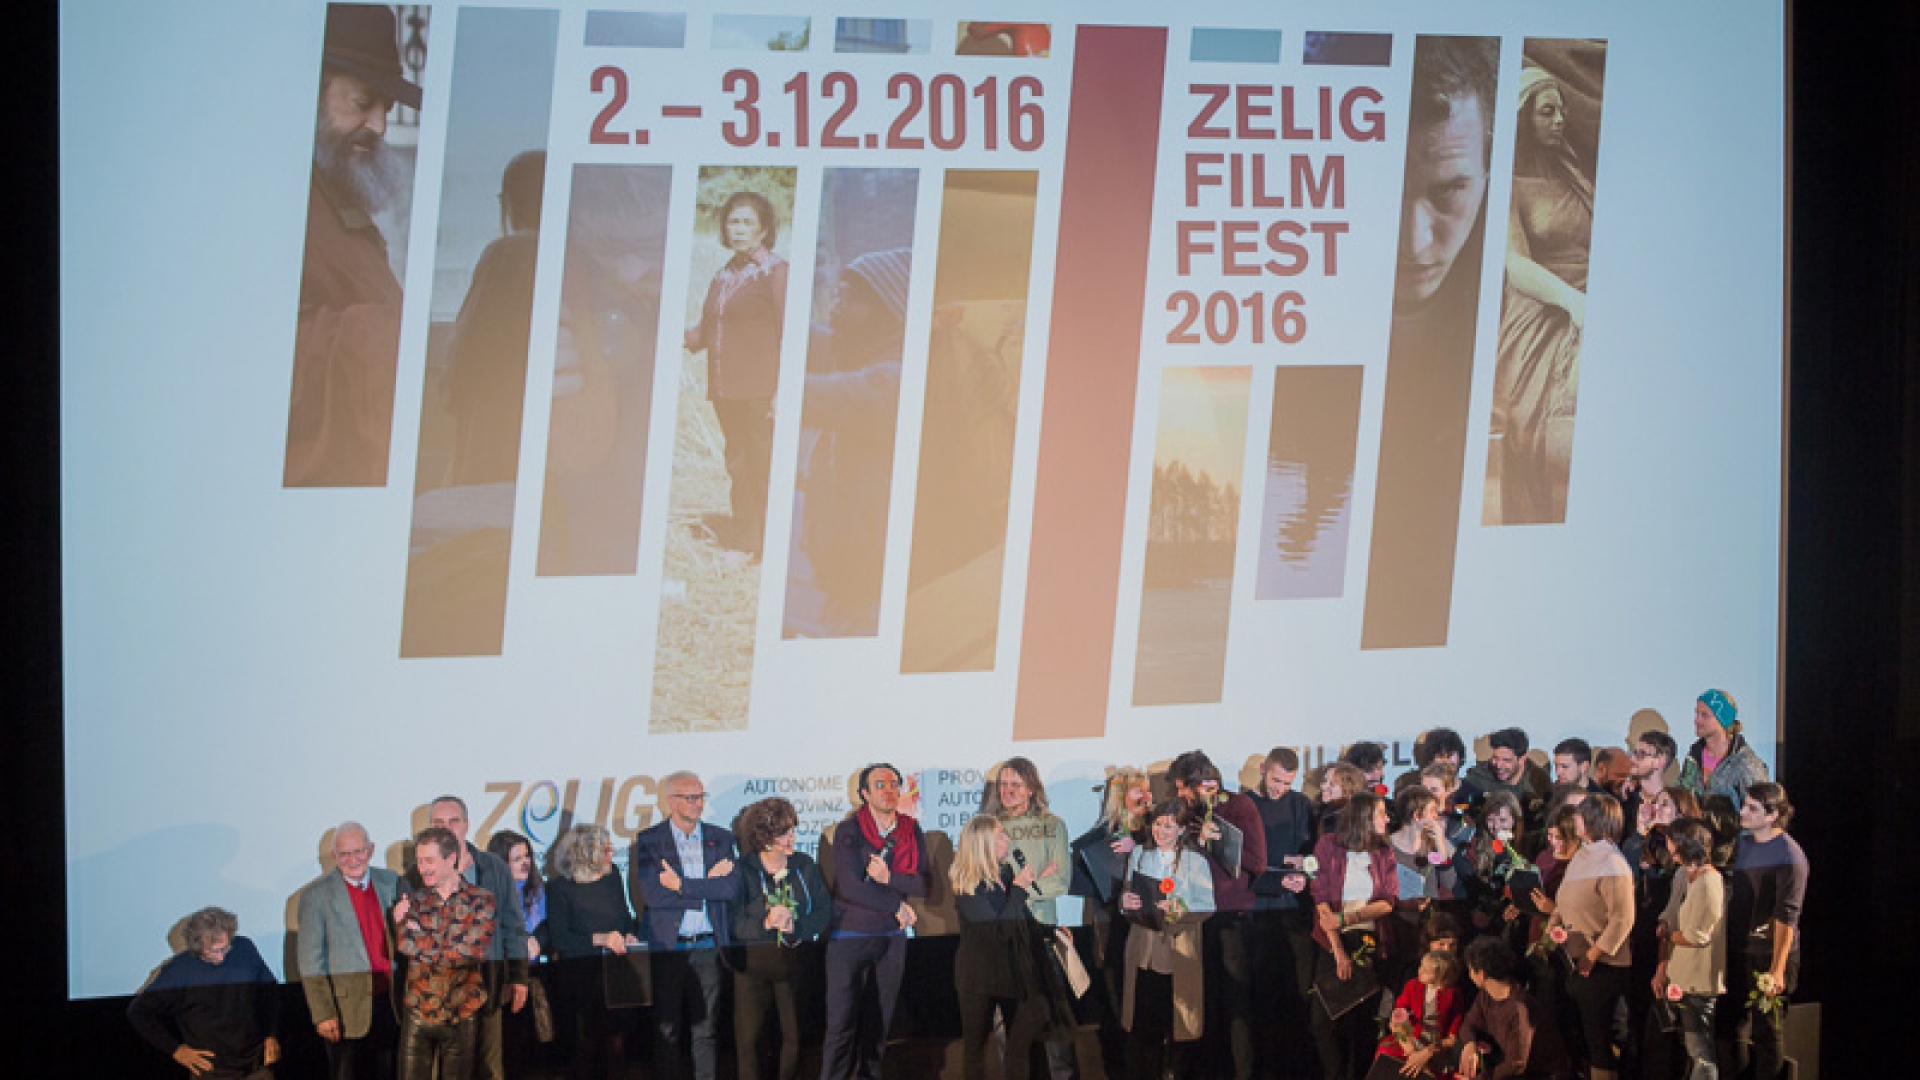 ZeLIG Film Fest 2016